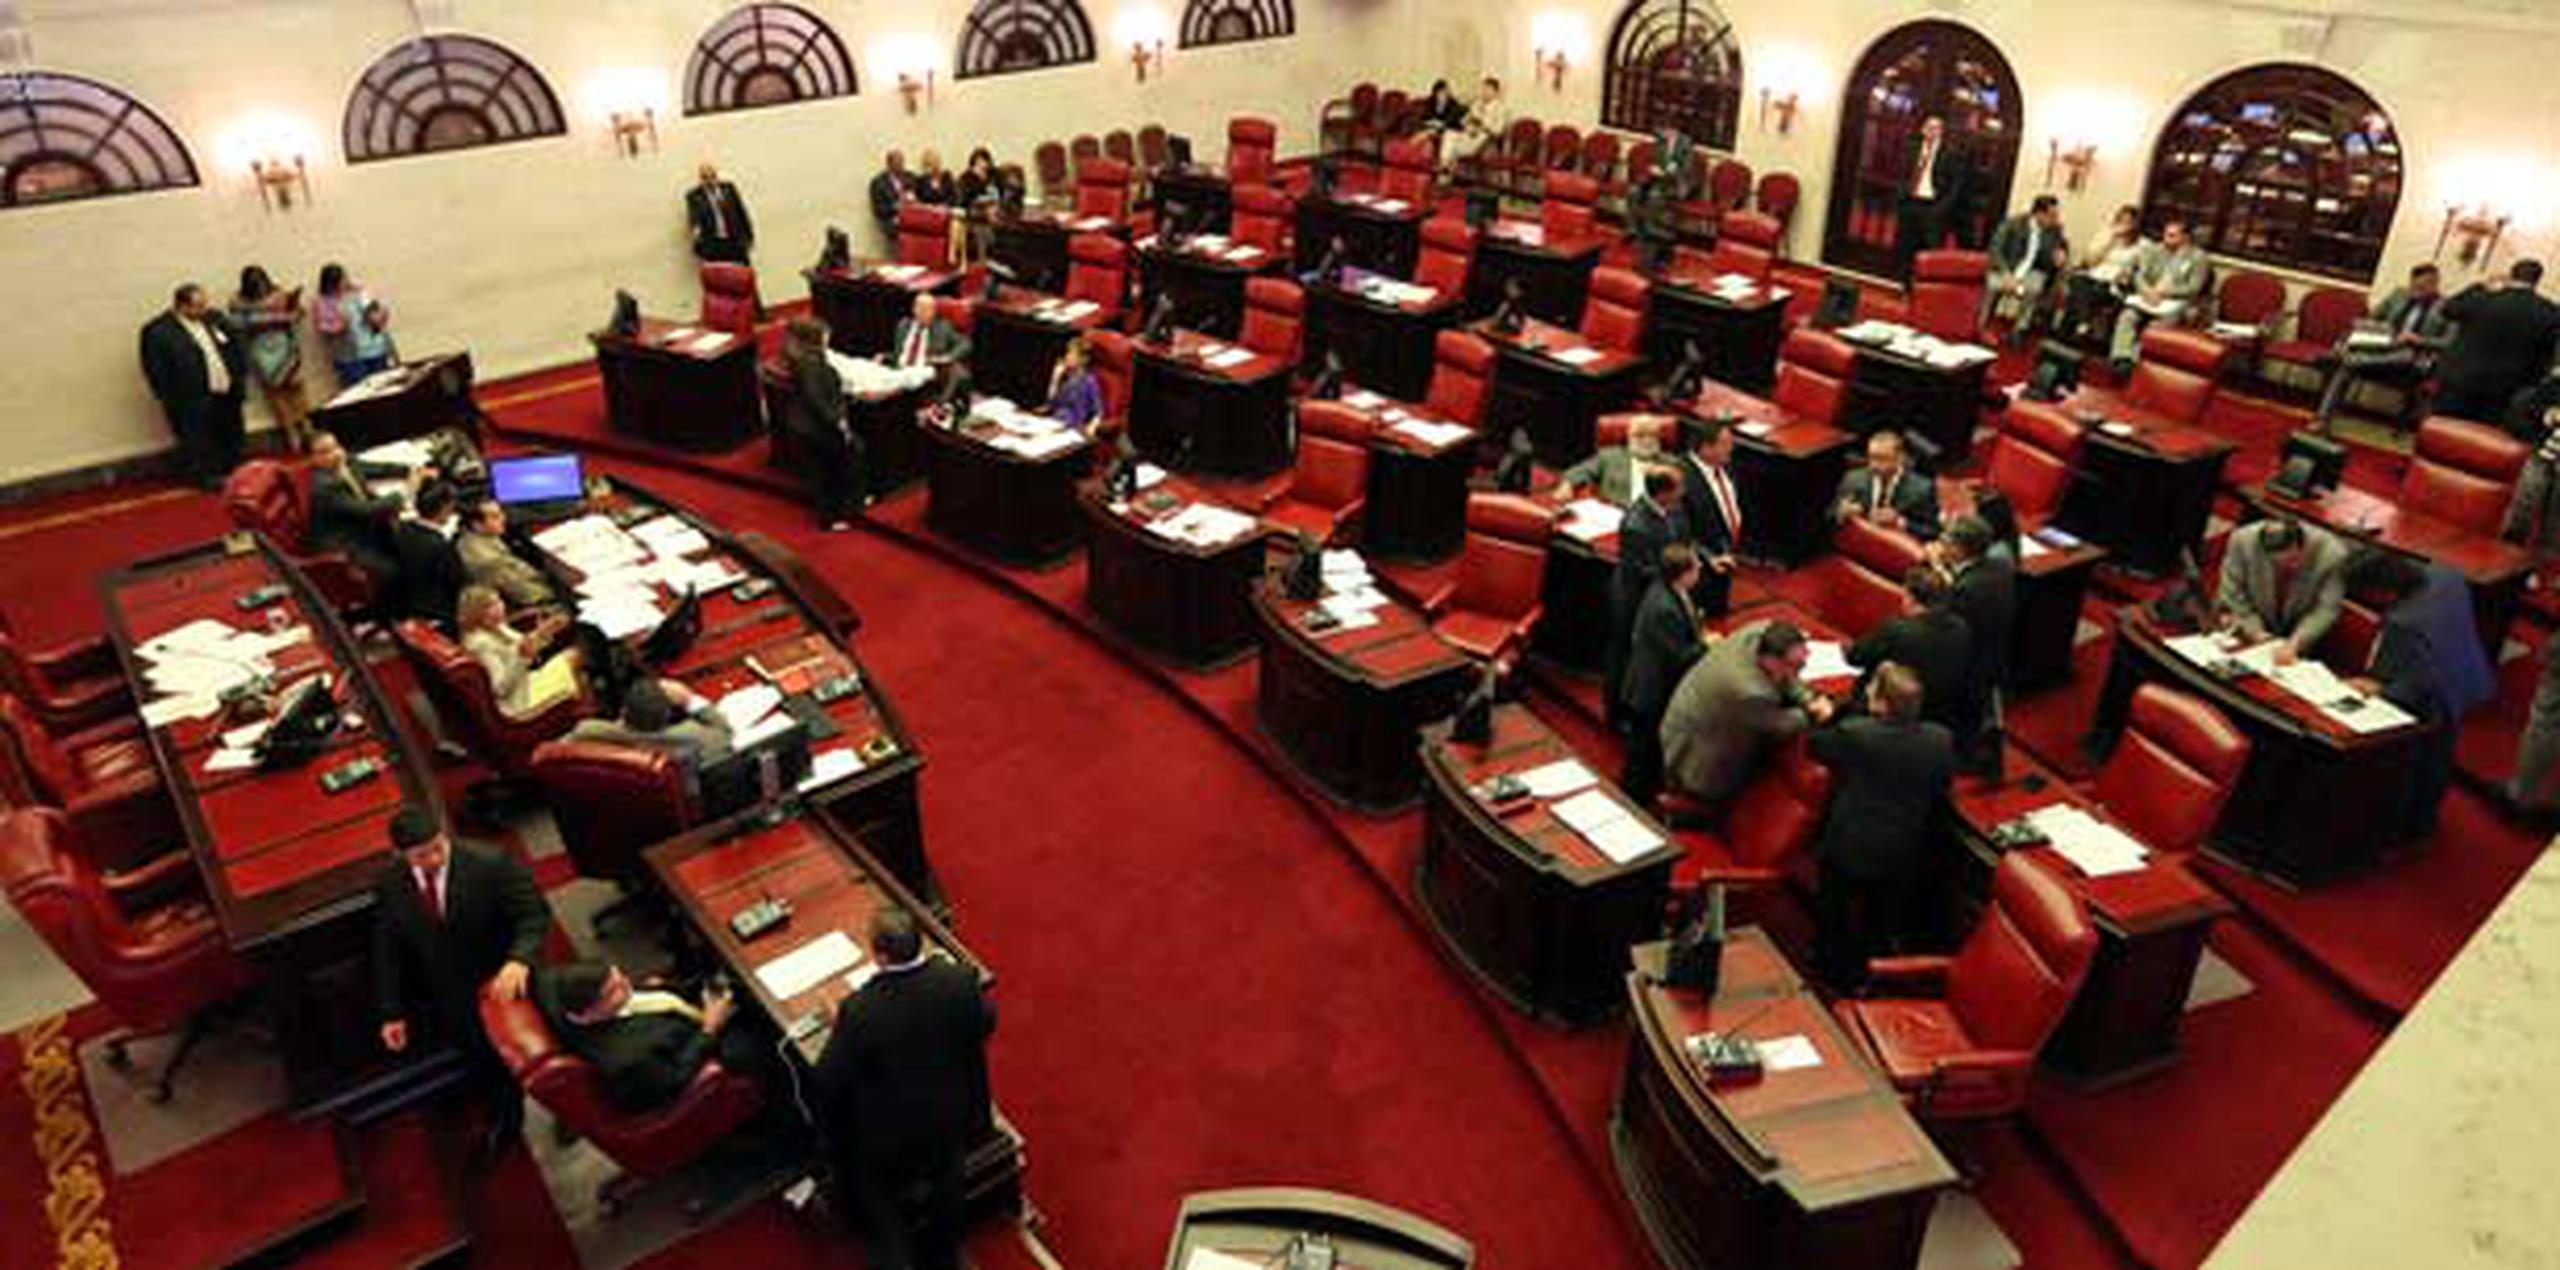 La reunión del caucus del PPD en el Senado terminó temprano en la noche. (juan.martinez@gfrmedia.com)